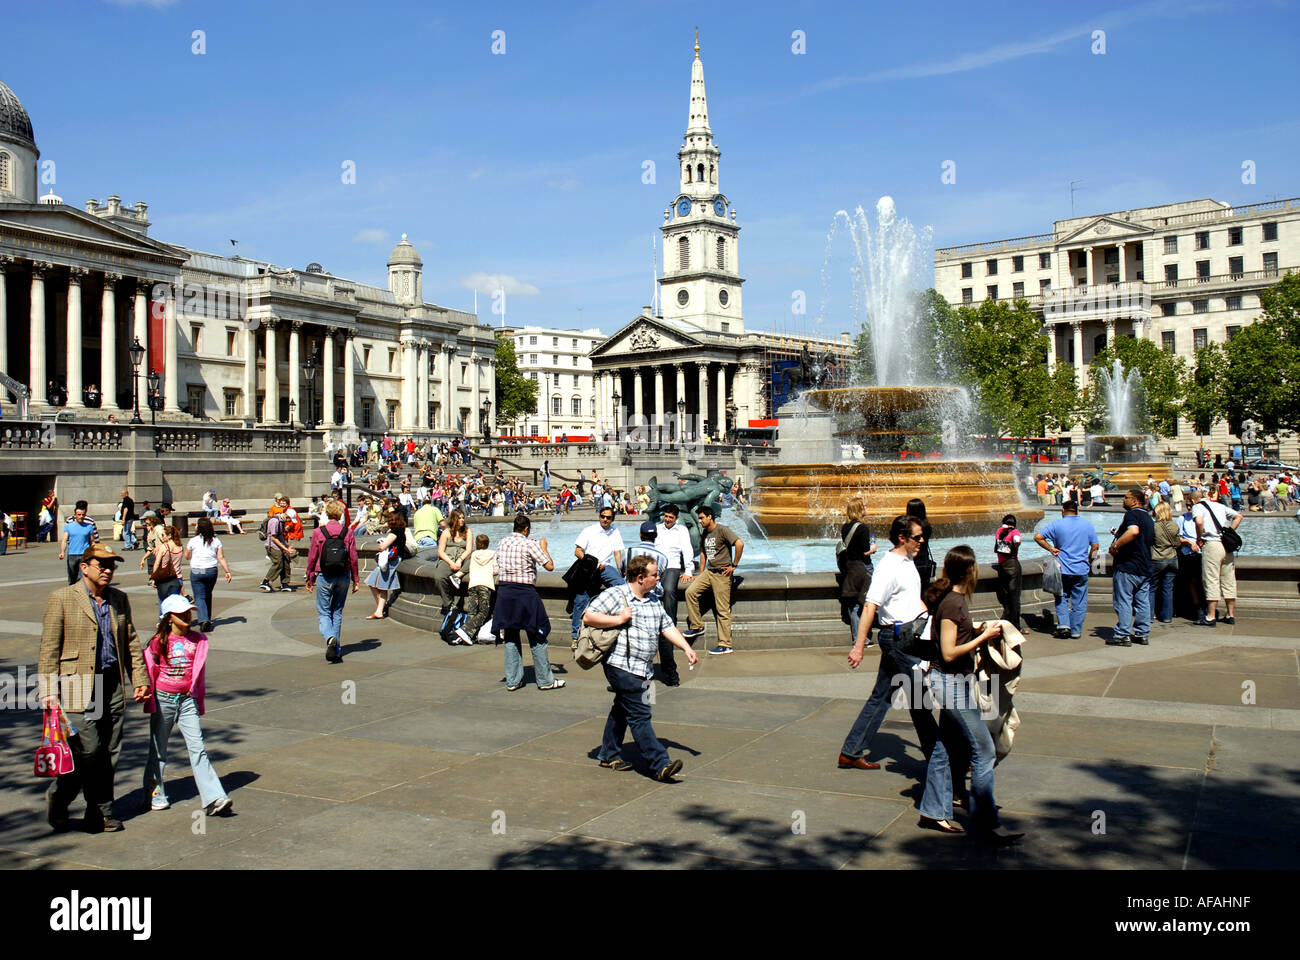 Les touristes profiter de Trafalgar Square, bordée par la National Gallery et St Martin in the Fields Church. Londres en Angleterre. Uk 2006 Banque D'Images